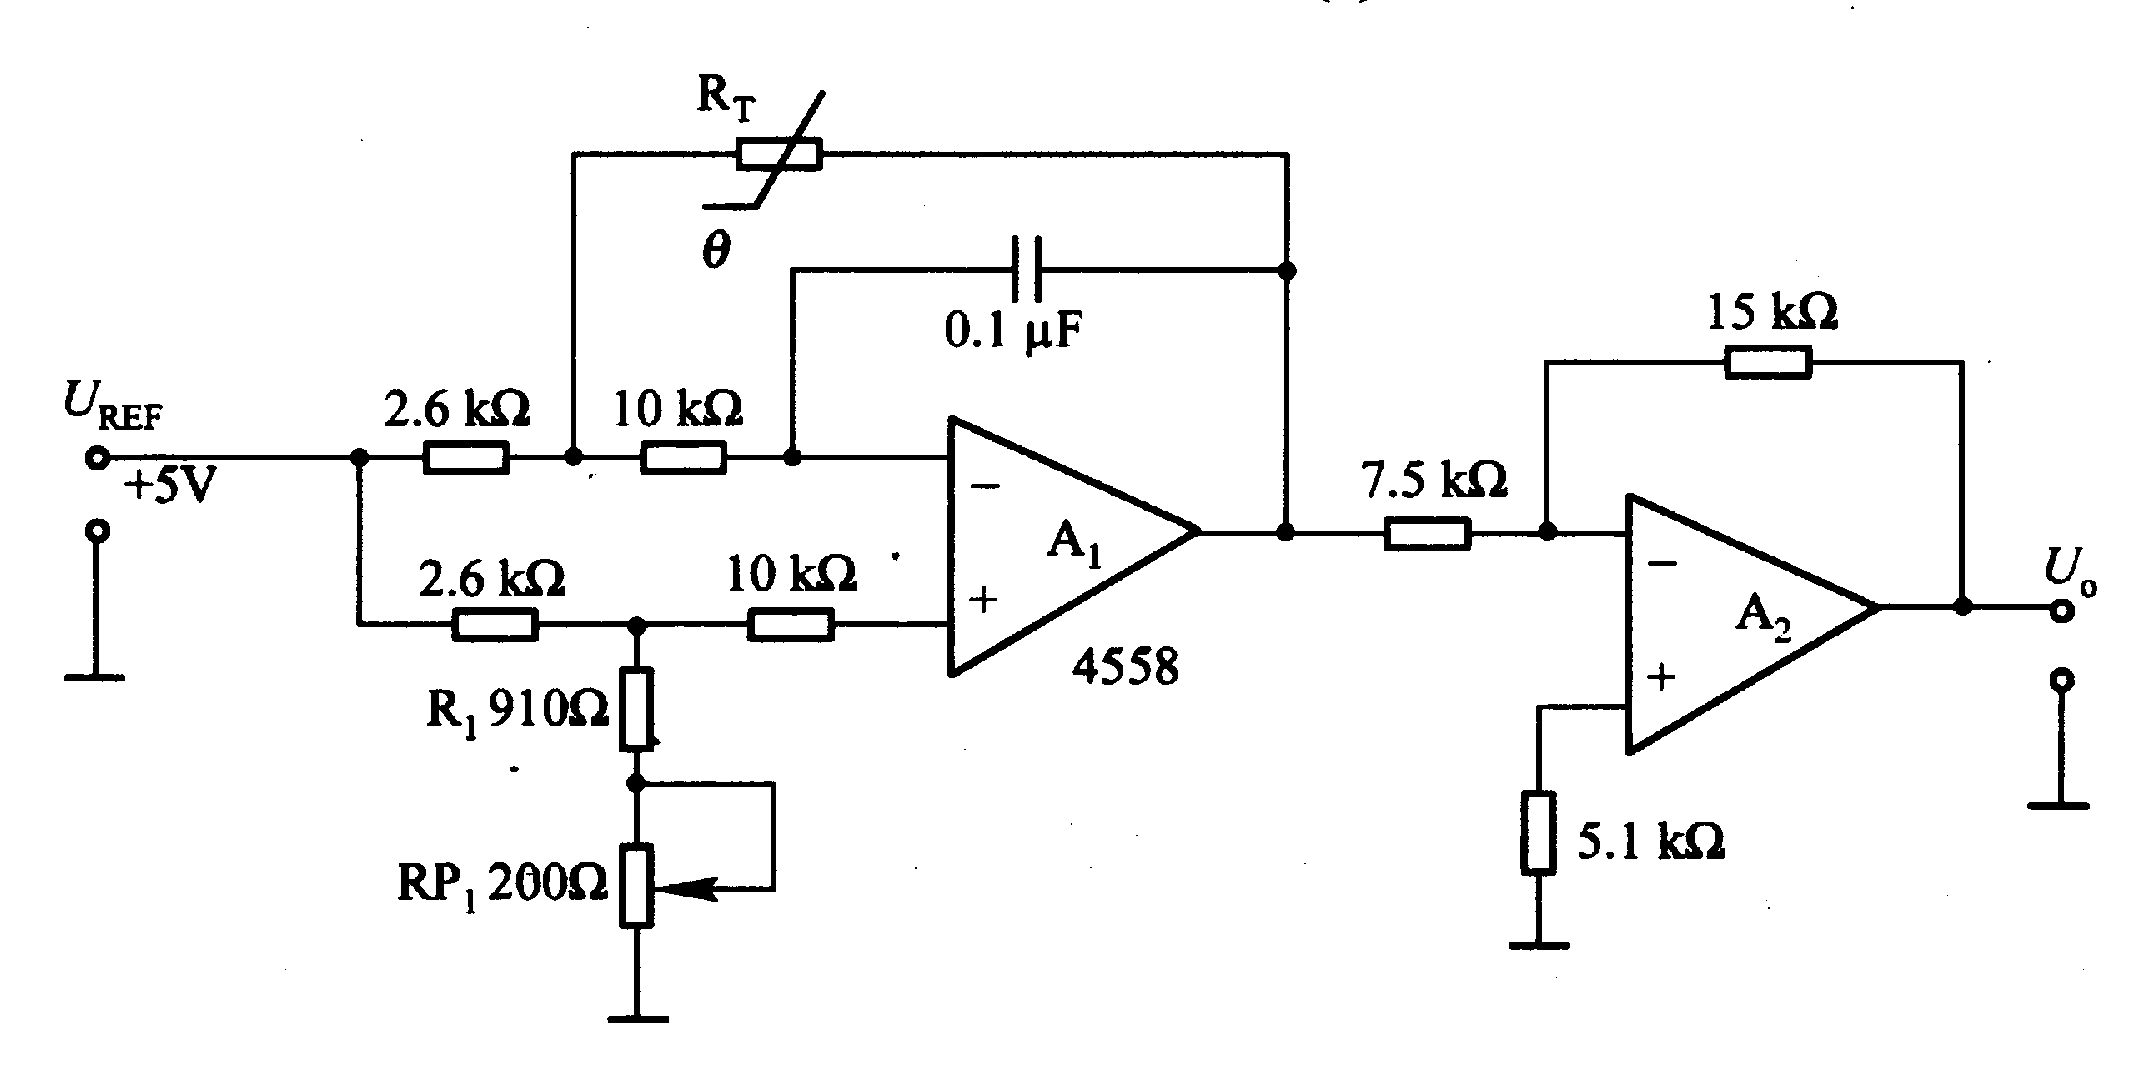 Temperature/voltage conversion circuit of thermistor ...